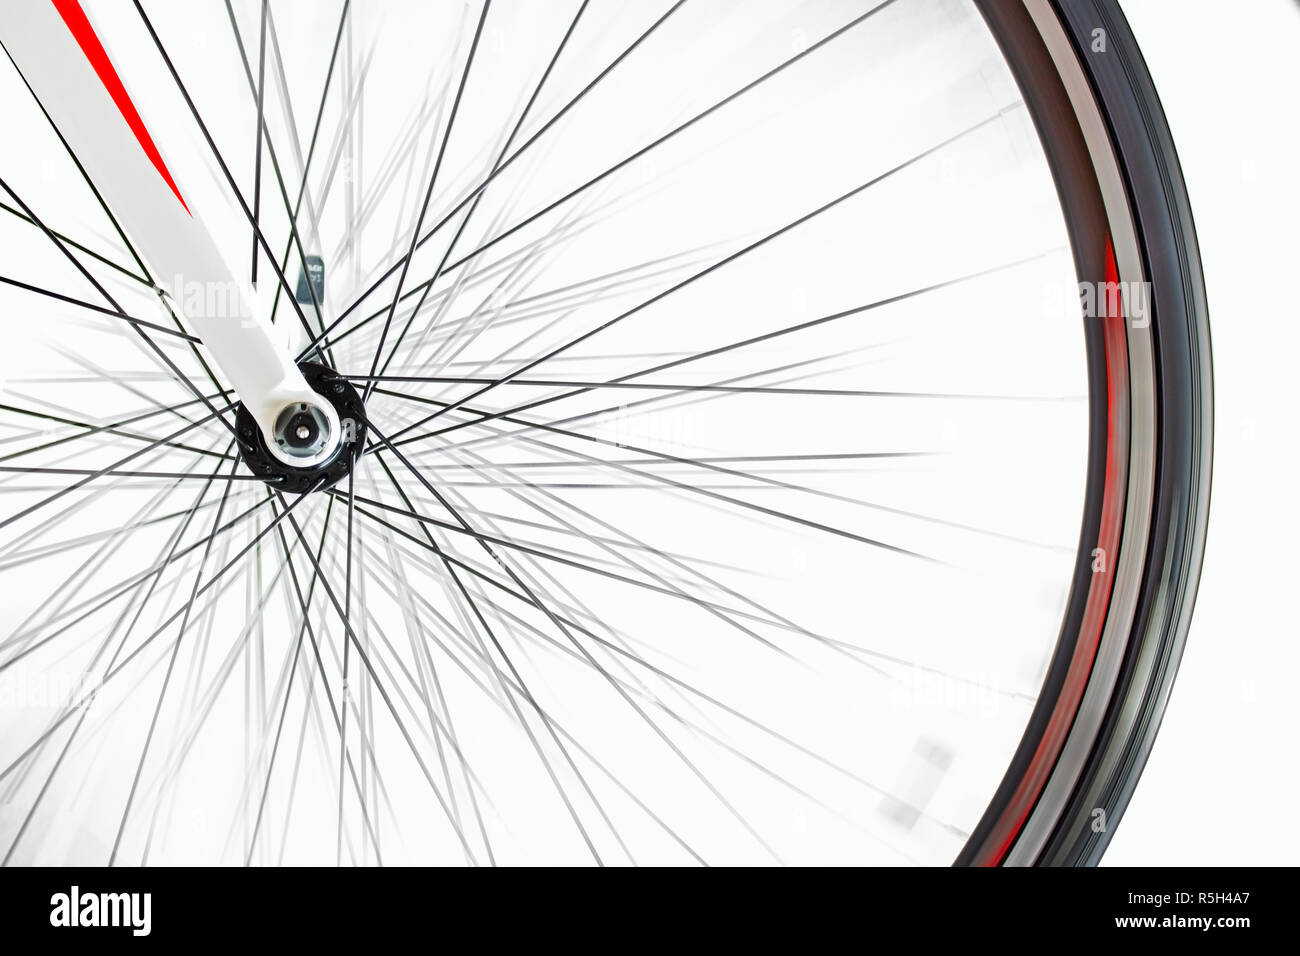 Das Vorderrad der Fahrrad dreht sich schnell auf einem weißen Hintergrund. Detail der Road Bike während dreht. Stockfoto